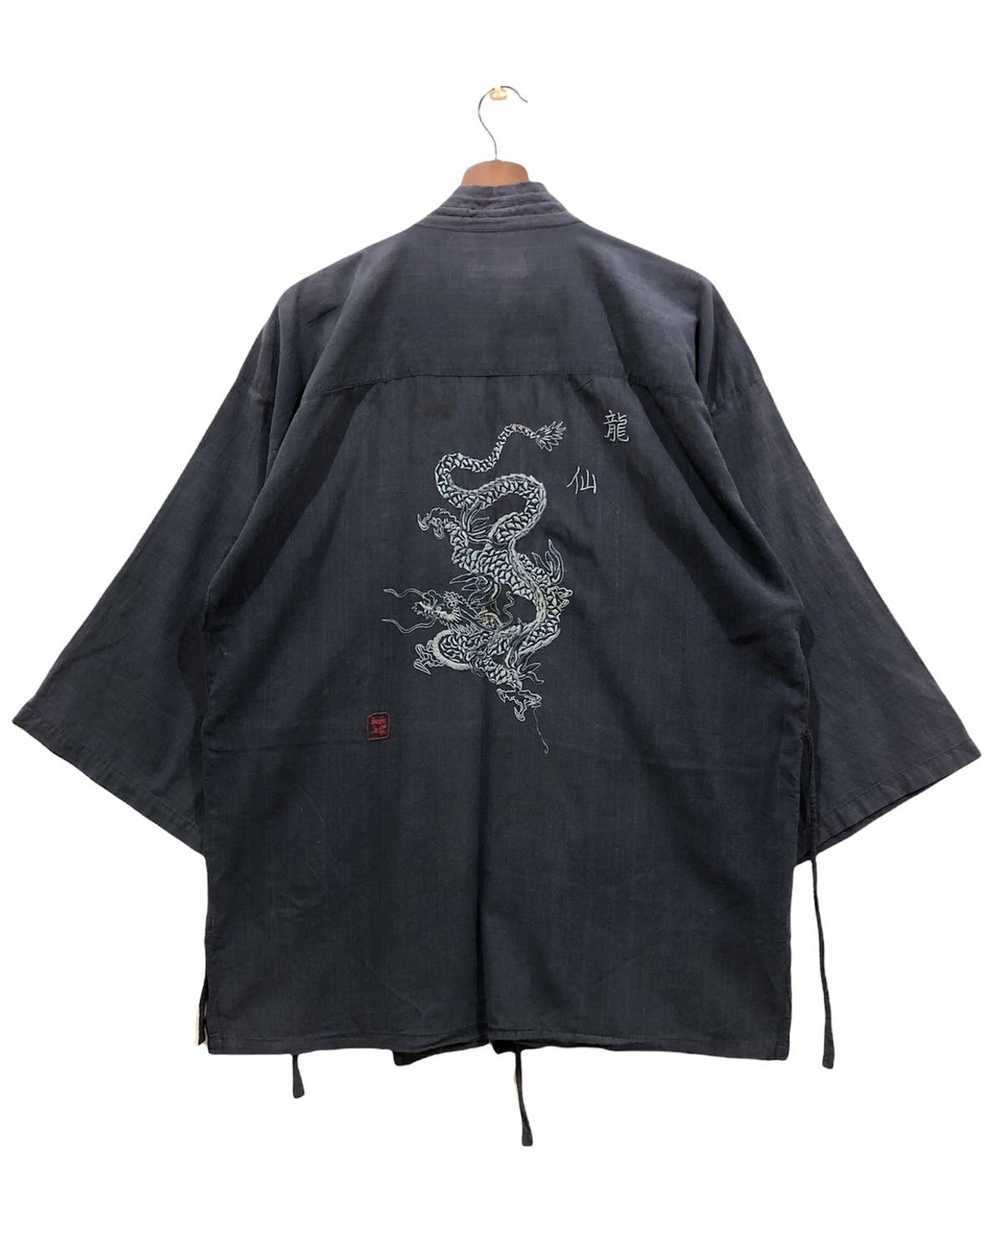 Kimono Japan Dragon Vintage Kimono japan dragon - image 2